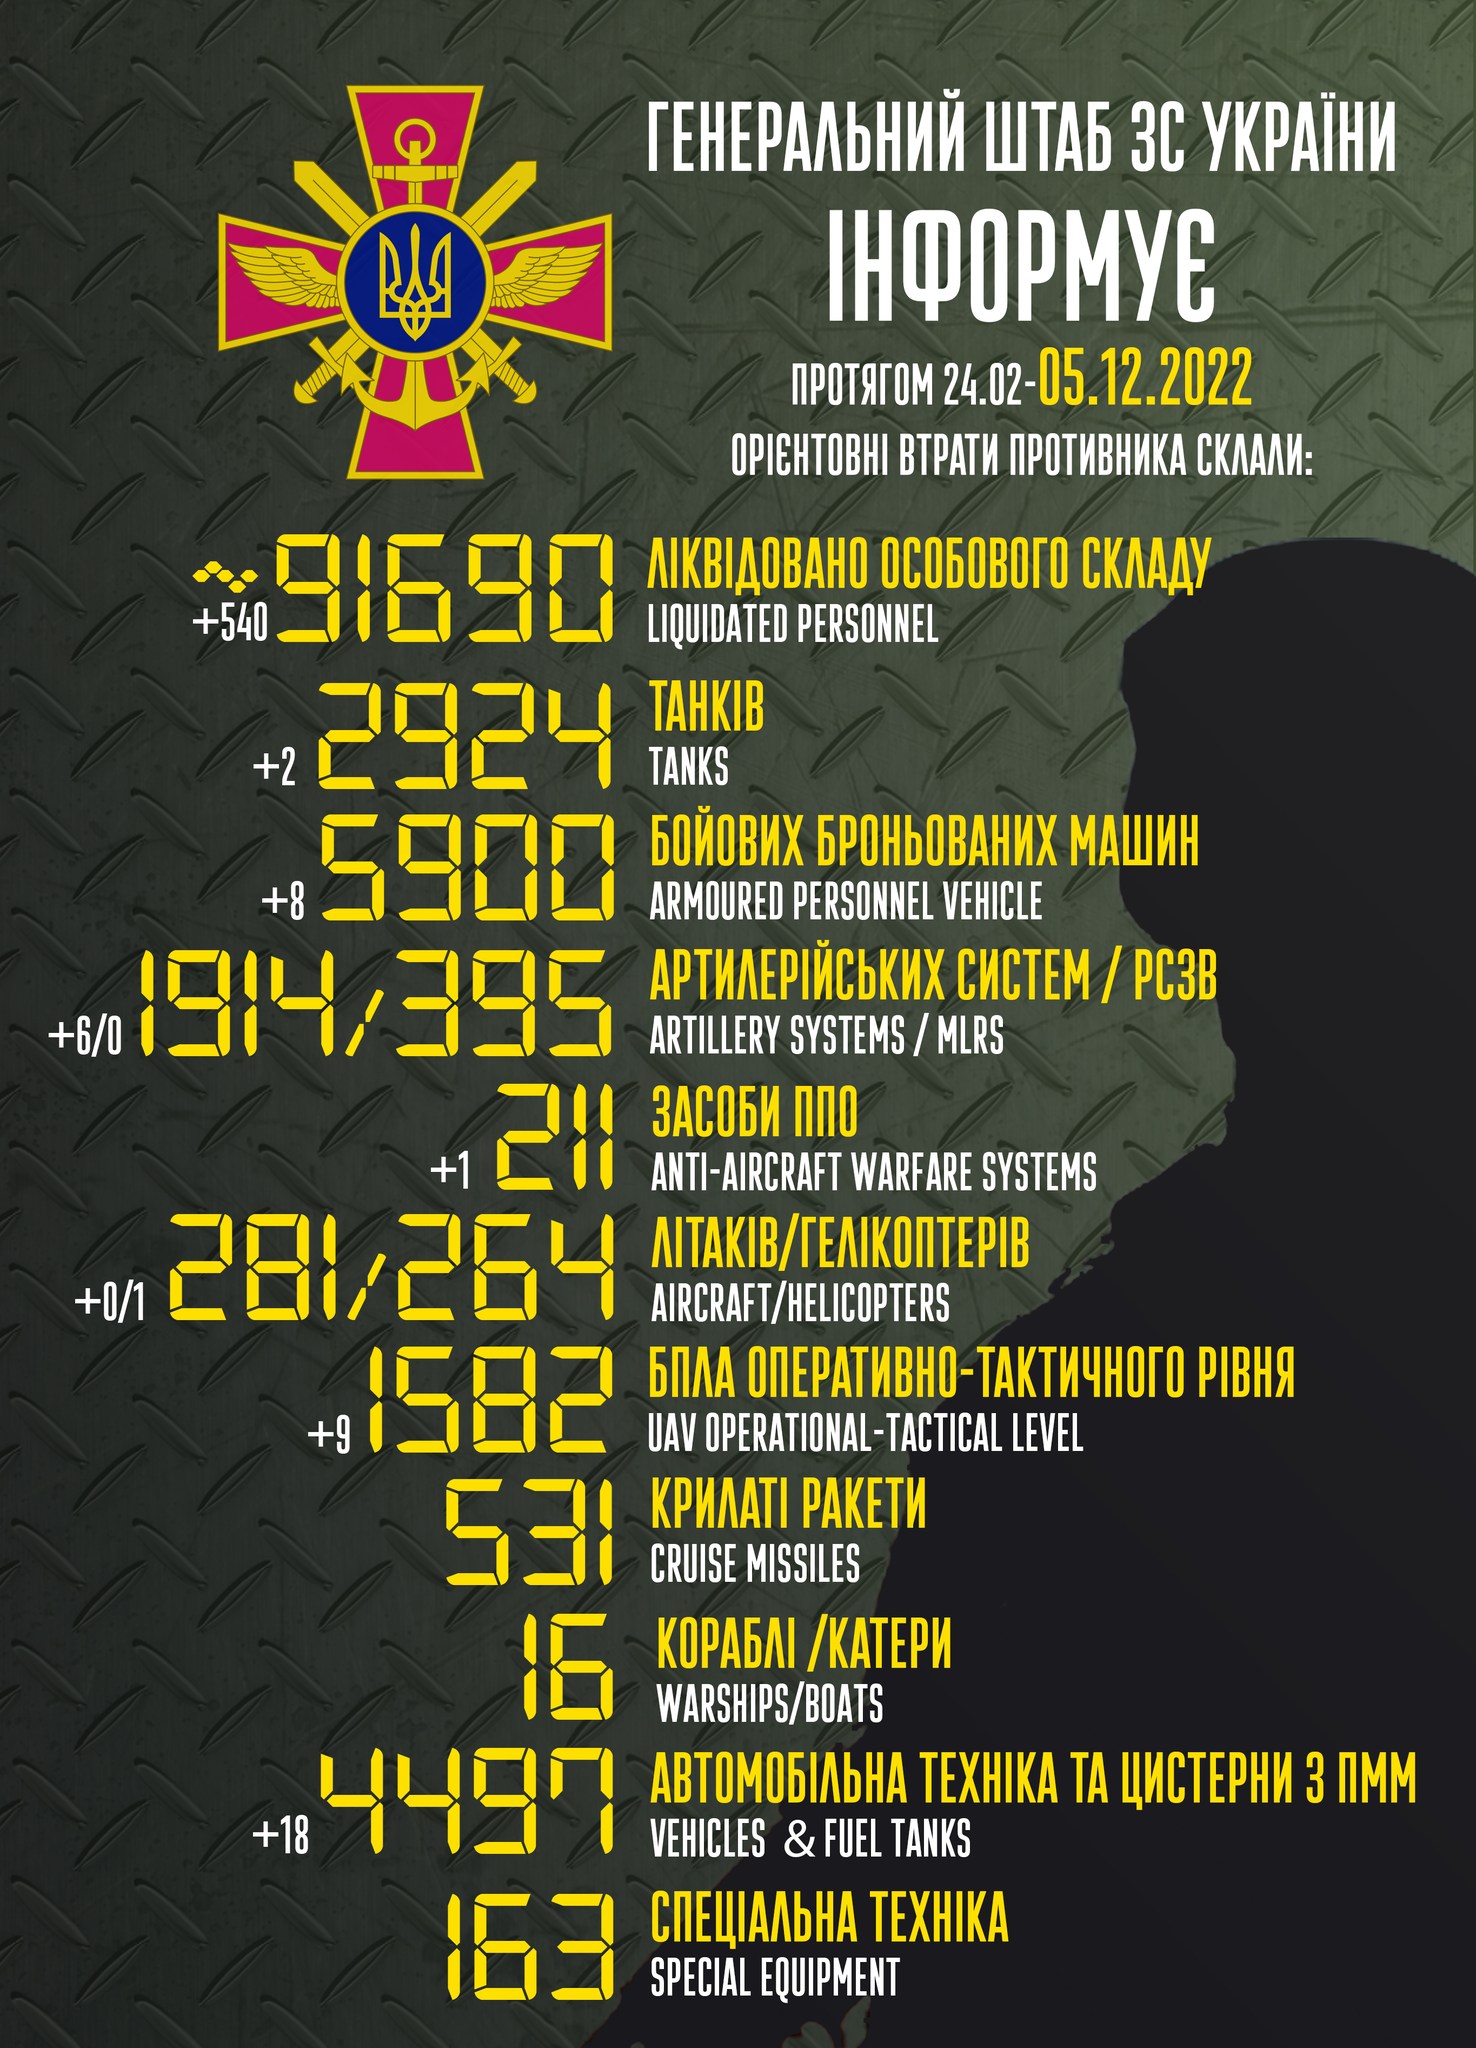 Сколько погибло россиян на войне - данные на 5 декабря от Генштаба